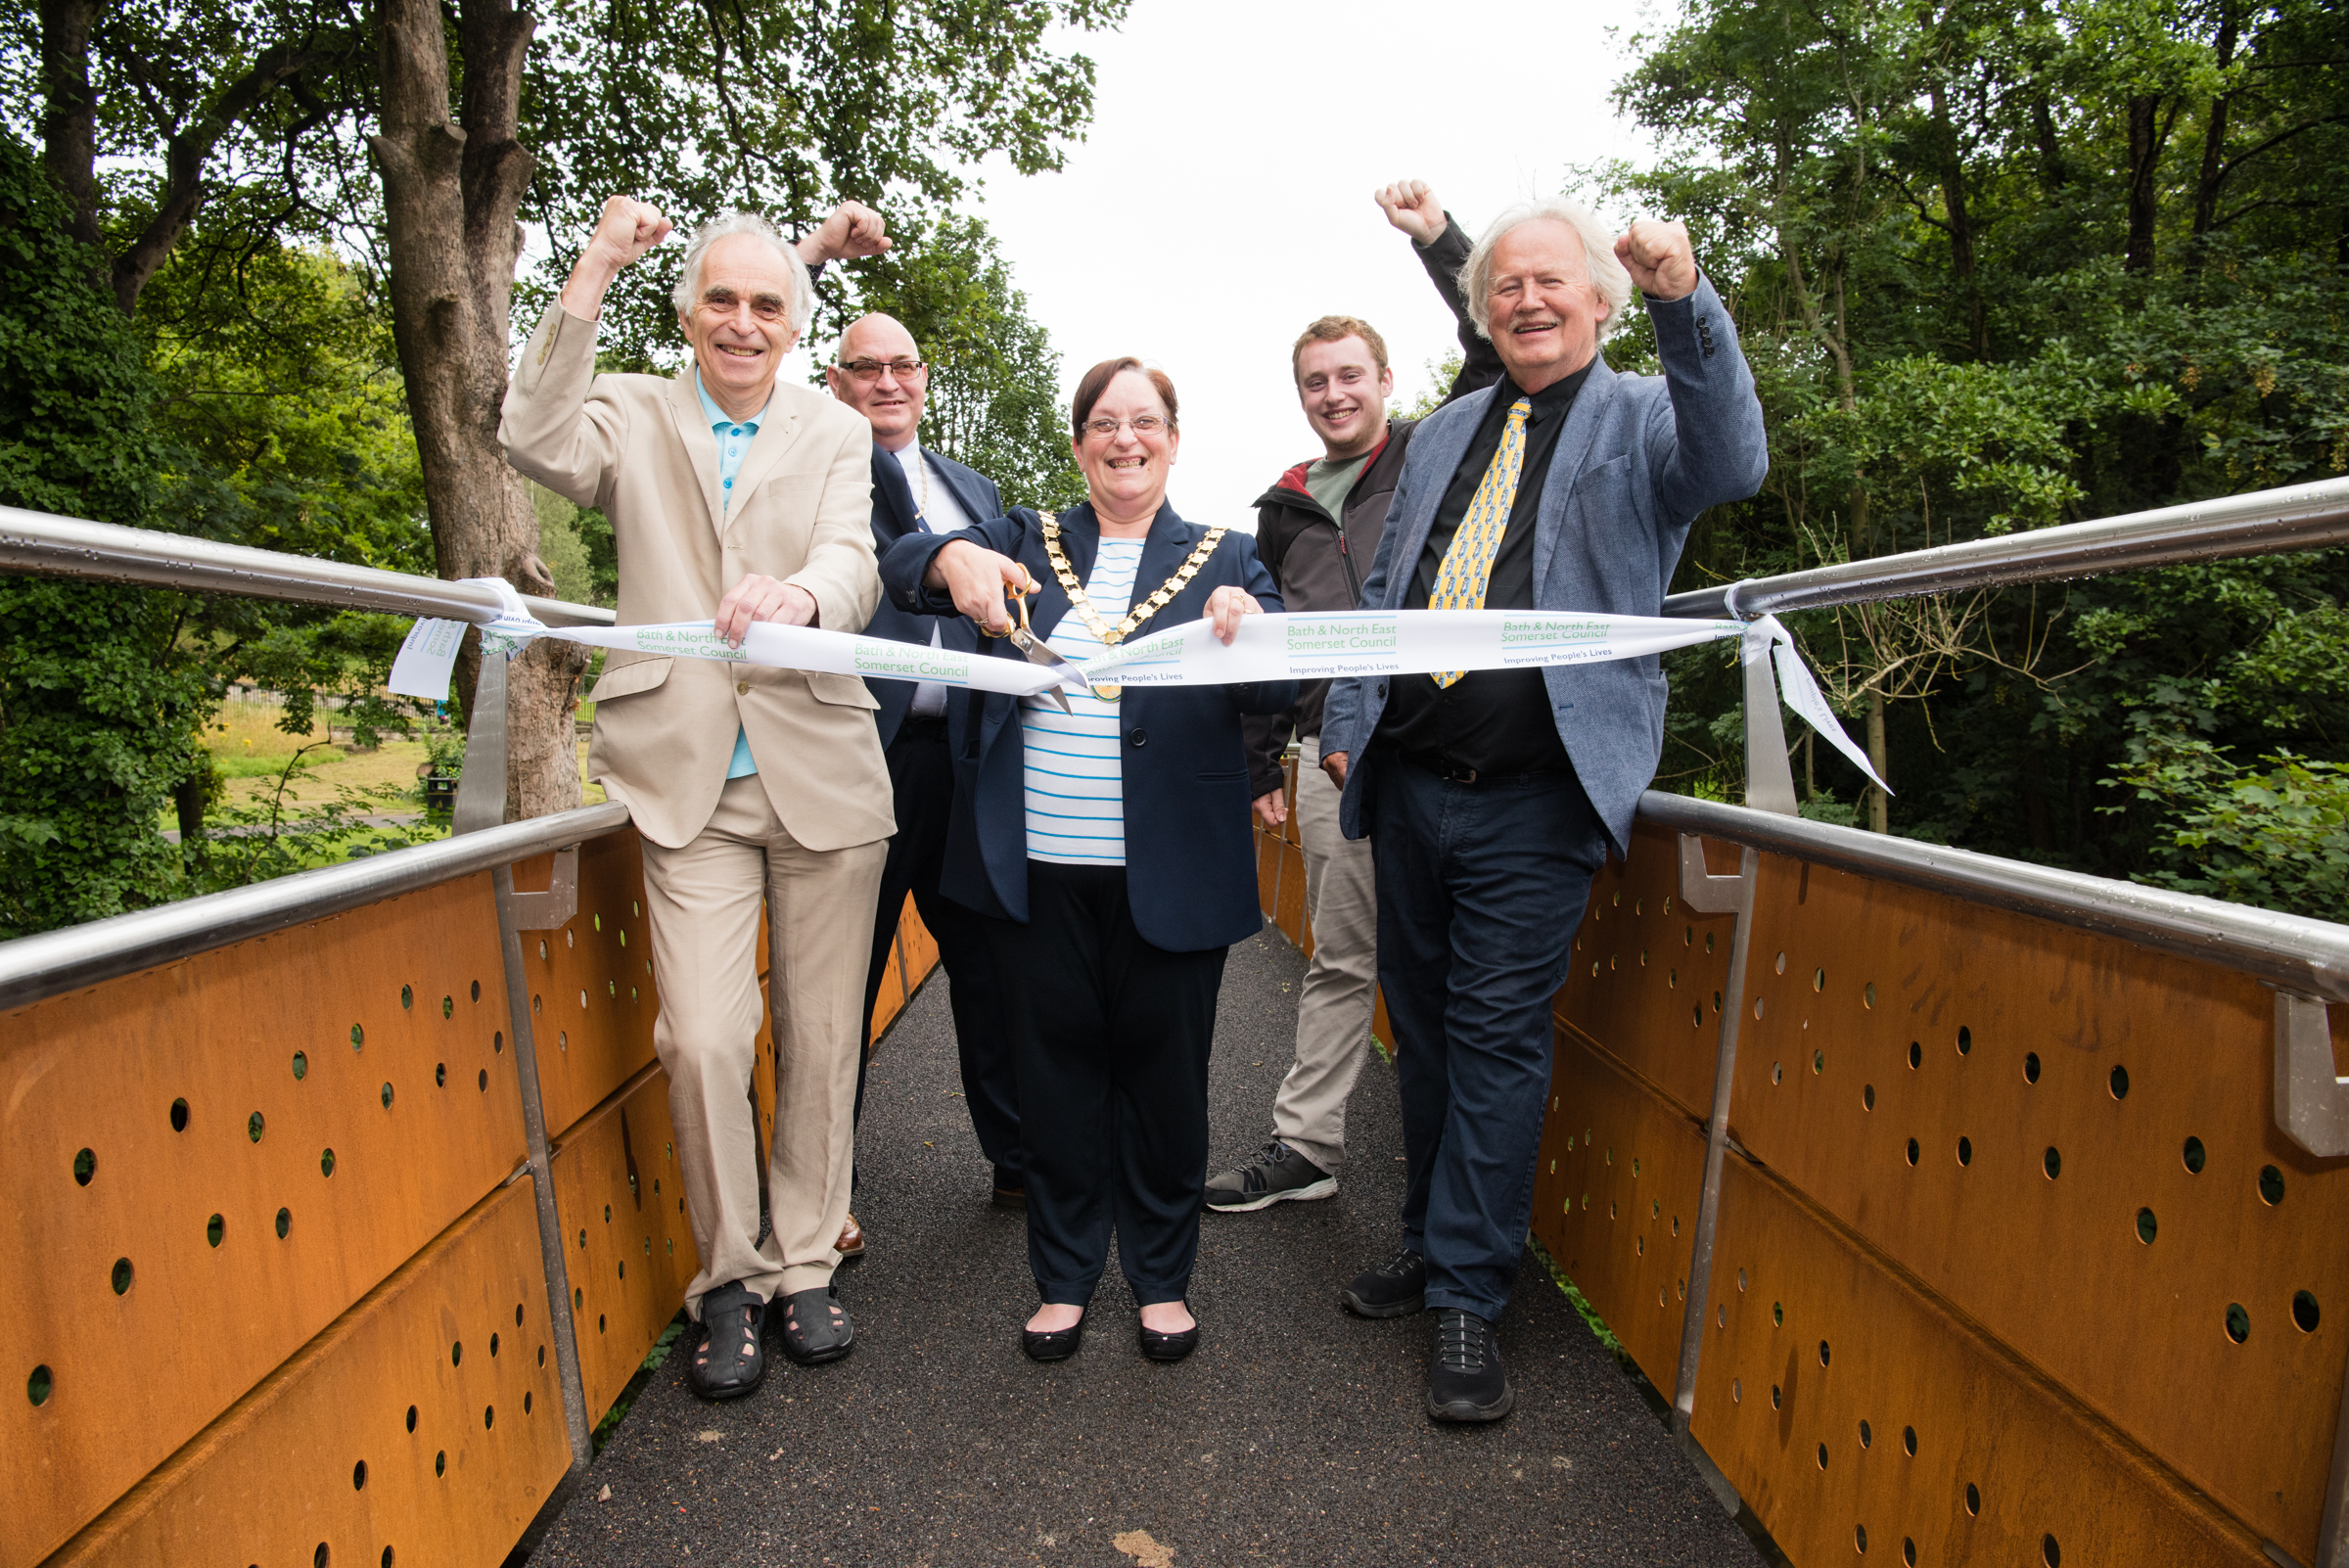 New footbridge opens at Keynsham Memorial Park